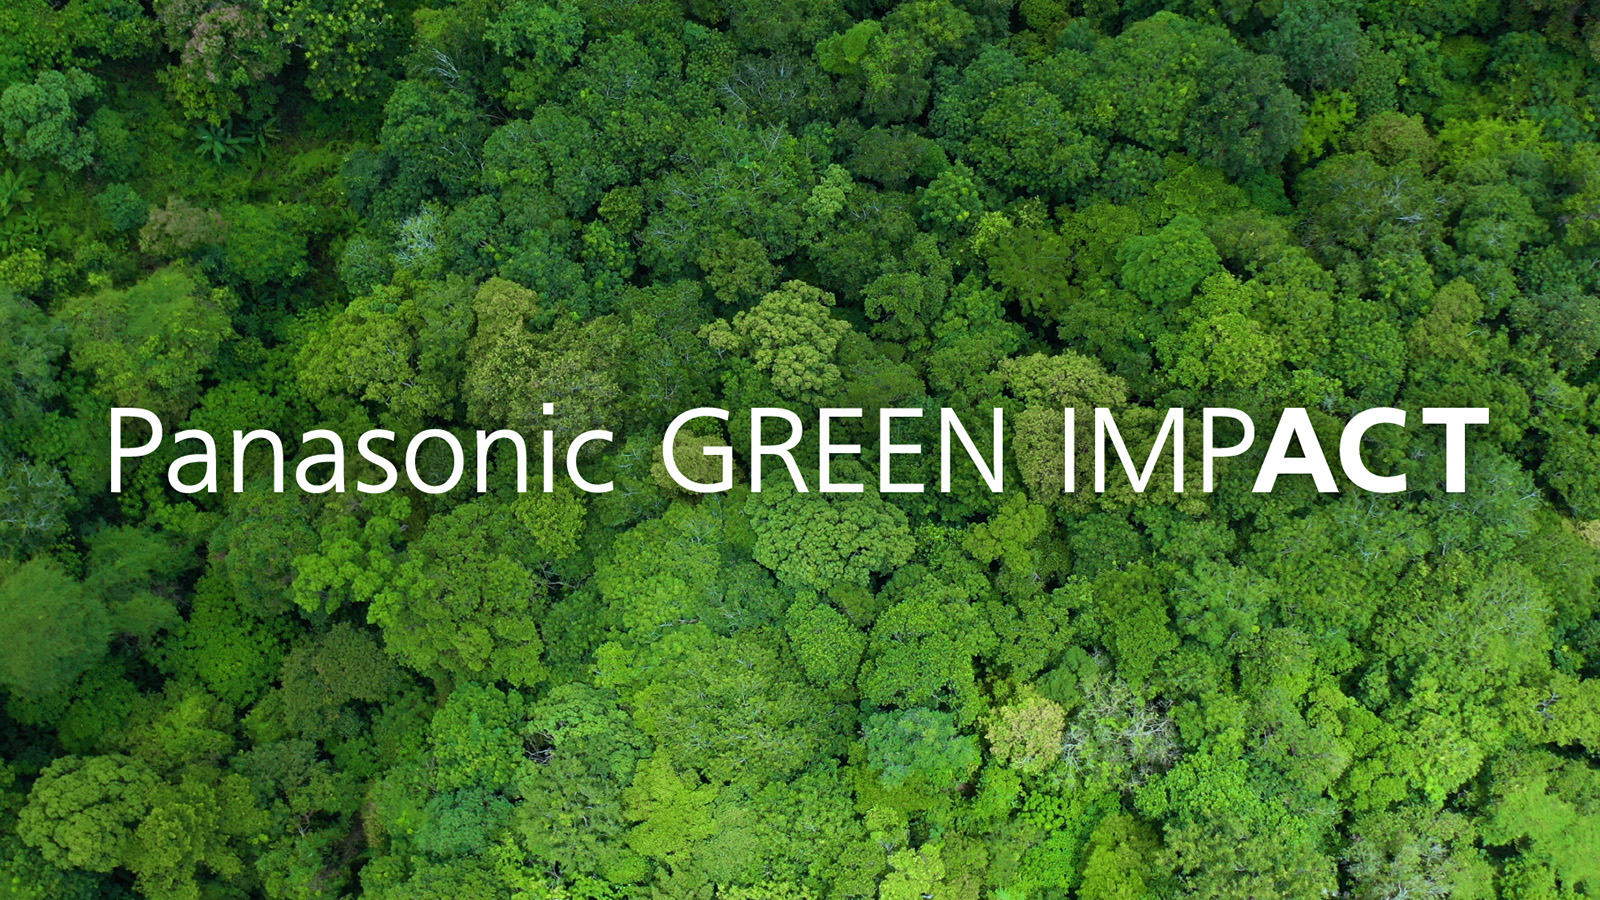 パナソニックグループが目指す環境ビジョン「Panasonic GREEN IMPACT」